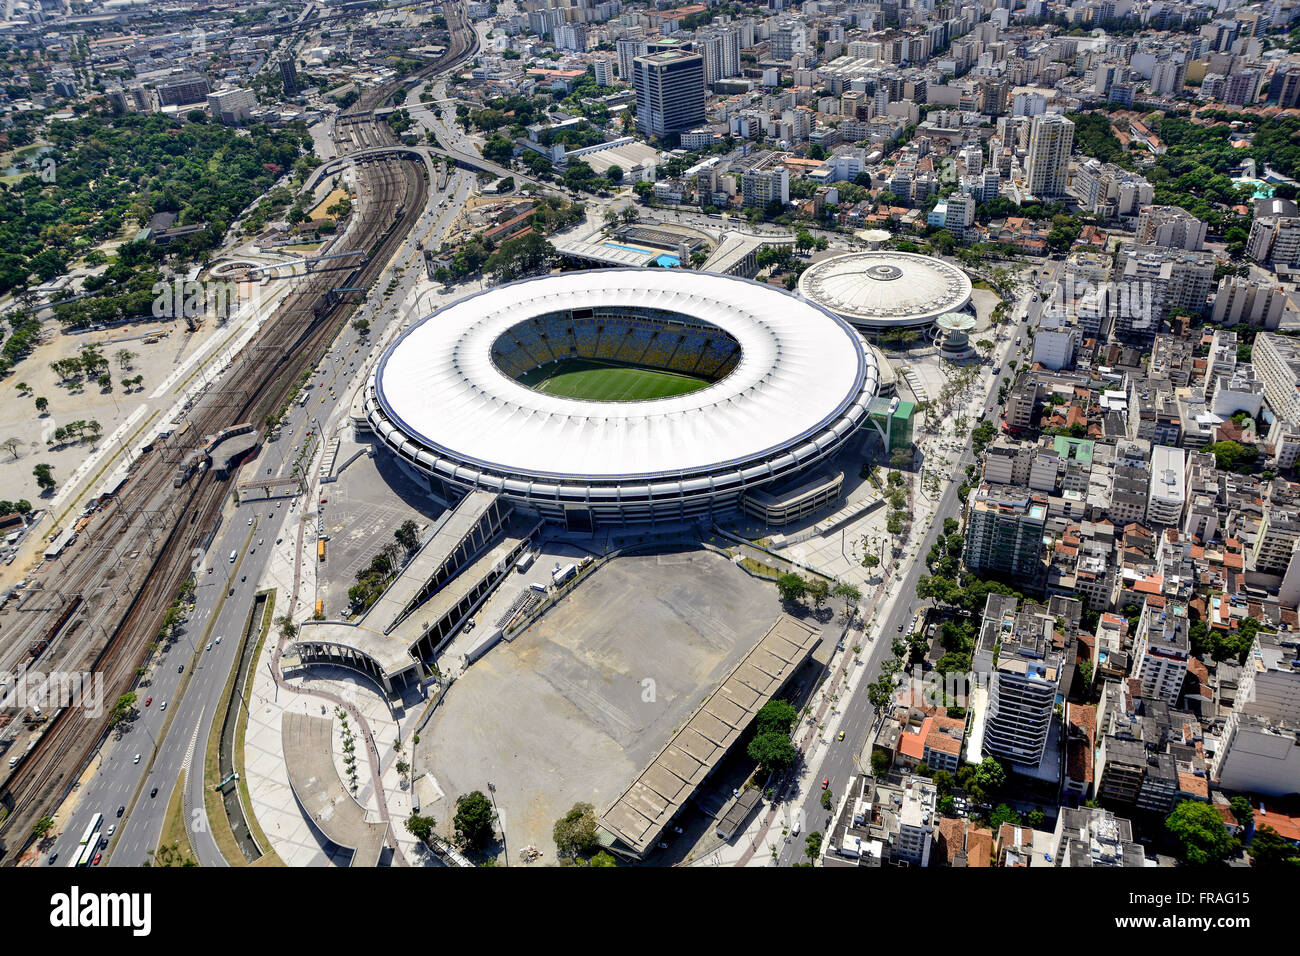 Complesso sportivo Athletics Stadium Maracana con Celio Barros, Maracana e Maracanazinho Foto Stock